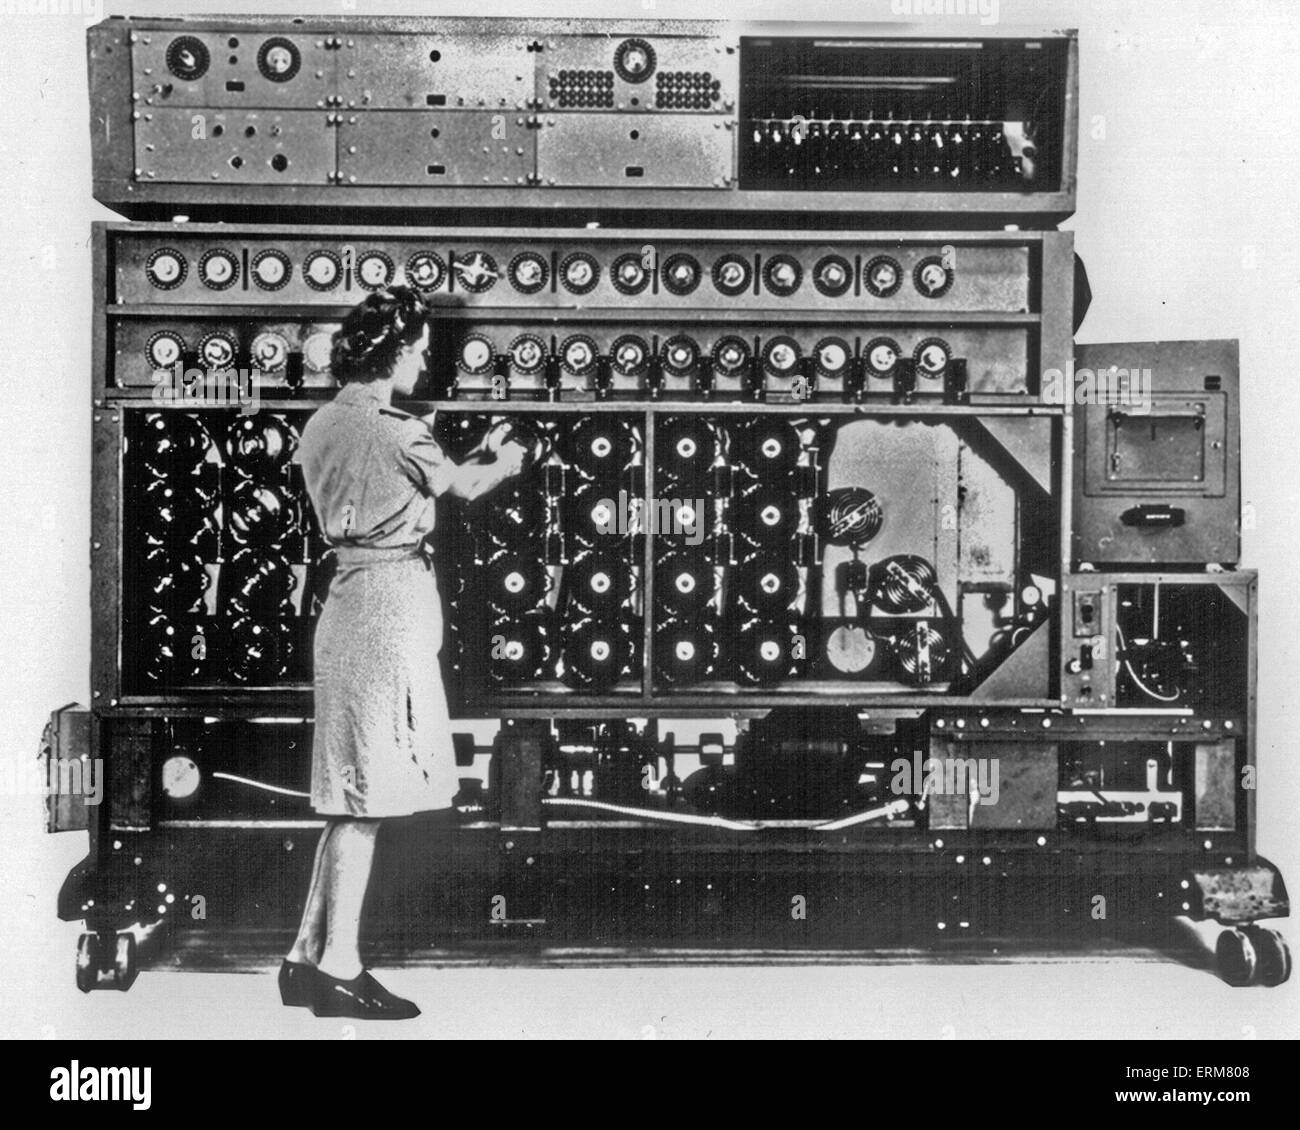 Modélisme Naval américain Mk 3 basé sur la conception de Bletchley Park mais incorporant 164 - rotor Enigma analogues à ce qui a rendu beaucoup plus rapidement. Fabriqué par la société Caisse Nationale de Dayton, Ohio. Photo : Agence Nationale de Sécurité Banque D'Images